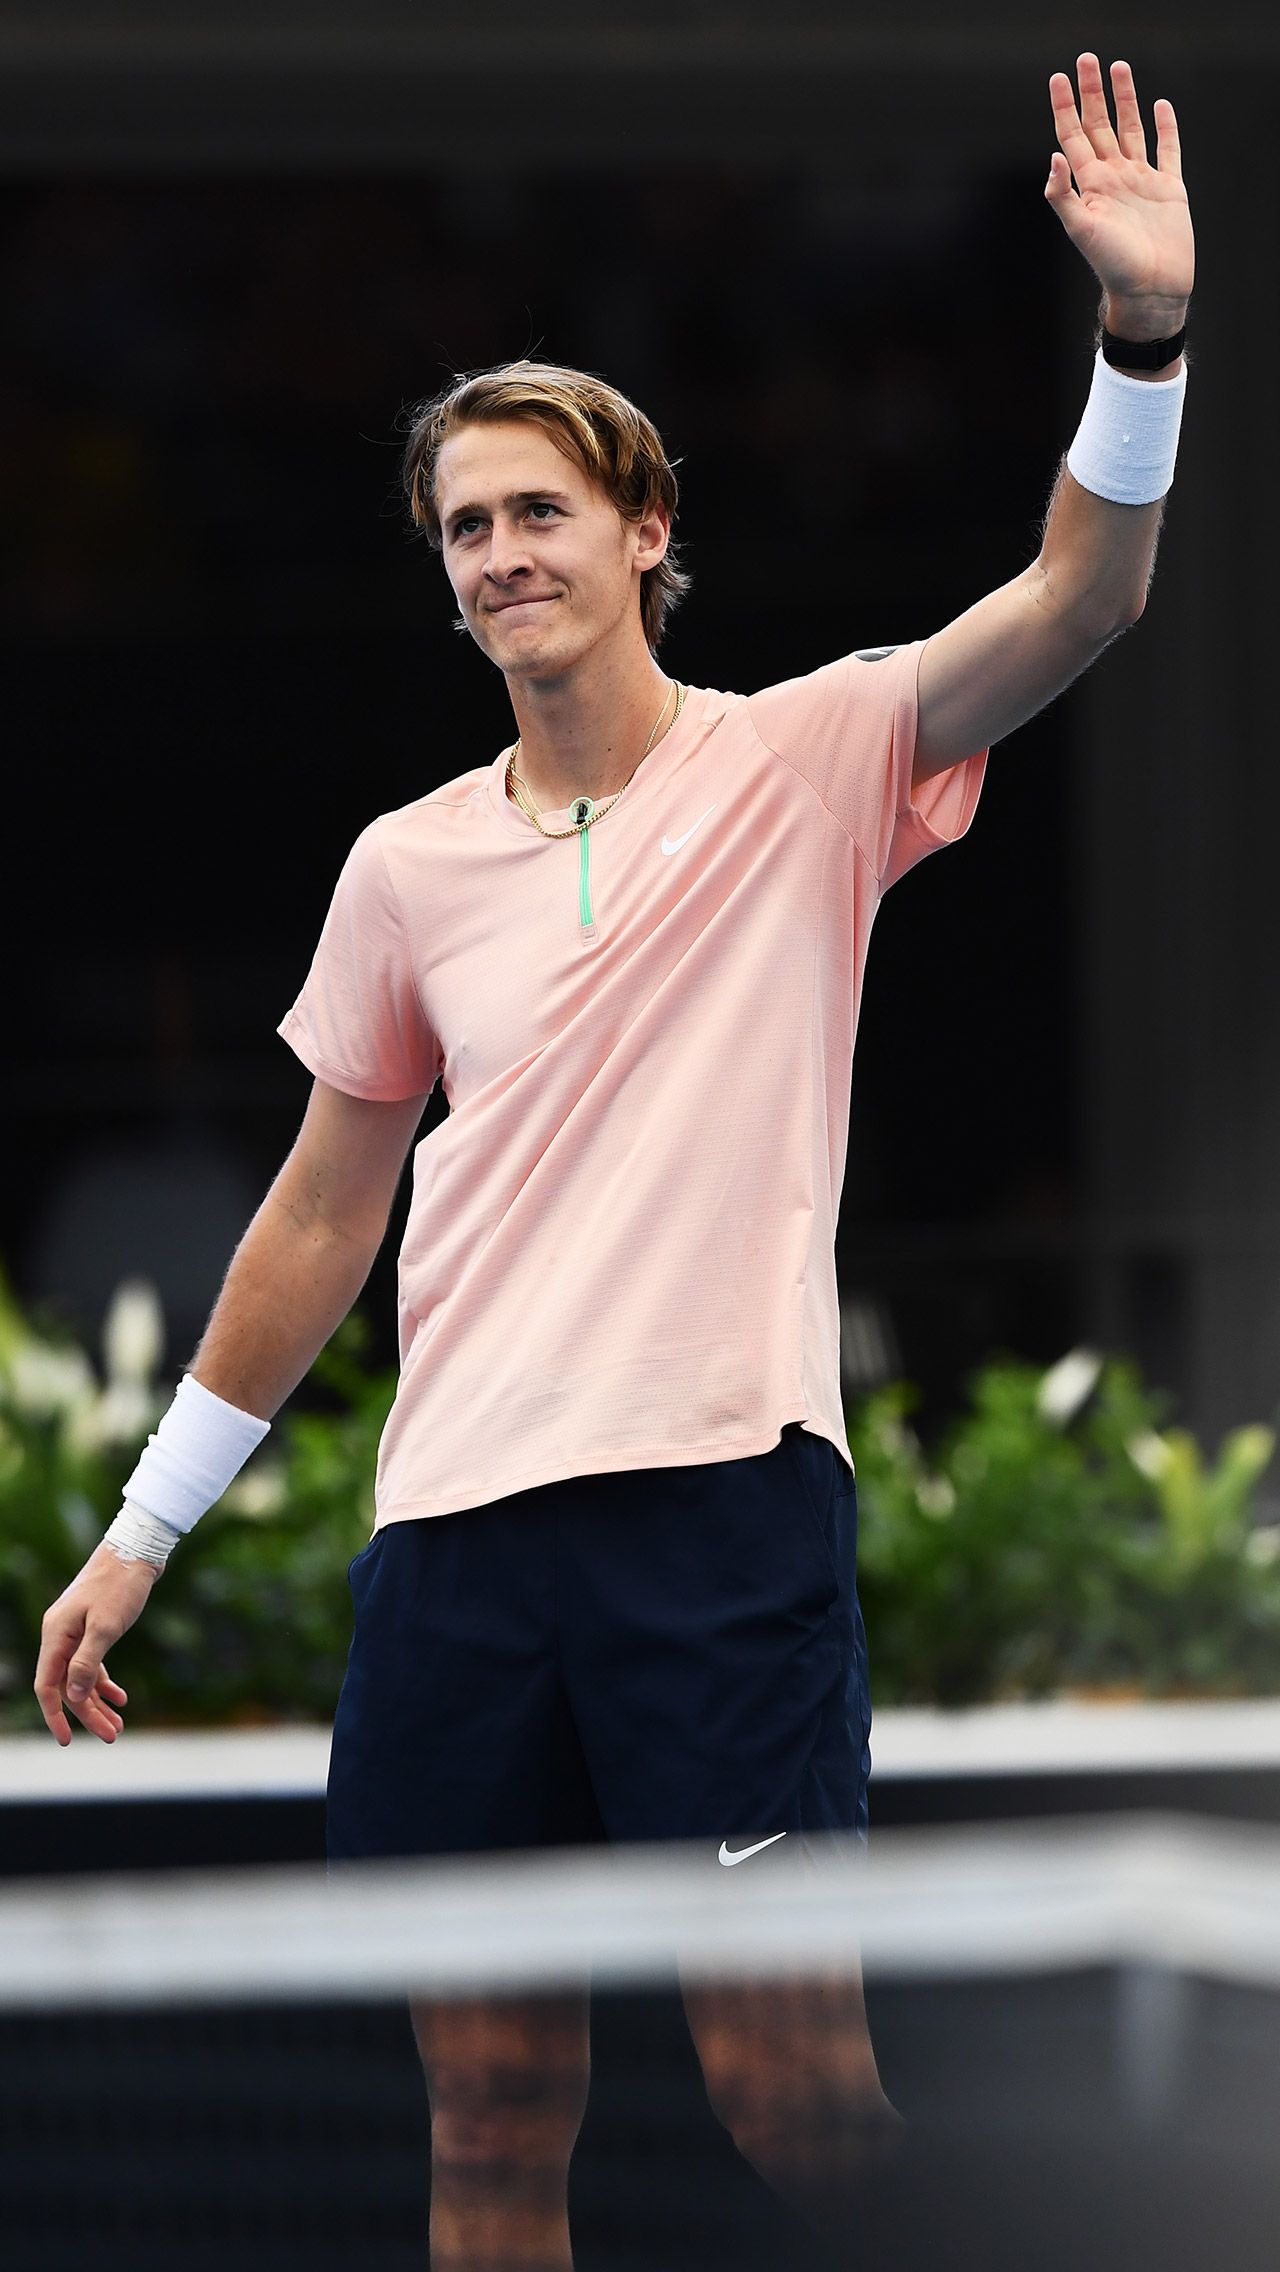 Себастьян родился в знаменитом теннисном Брейдентоне, штат Флорида, и защищает цвета американского флага. В 2018 году Корда-младший выиграл юниорский Открытый чемпионат Австралии.